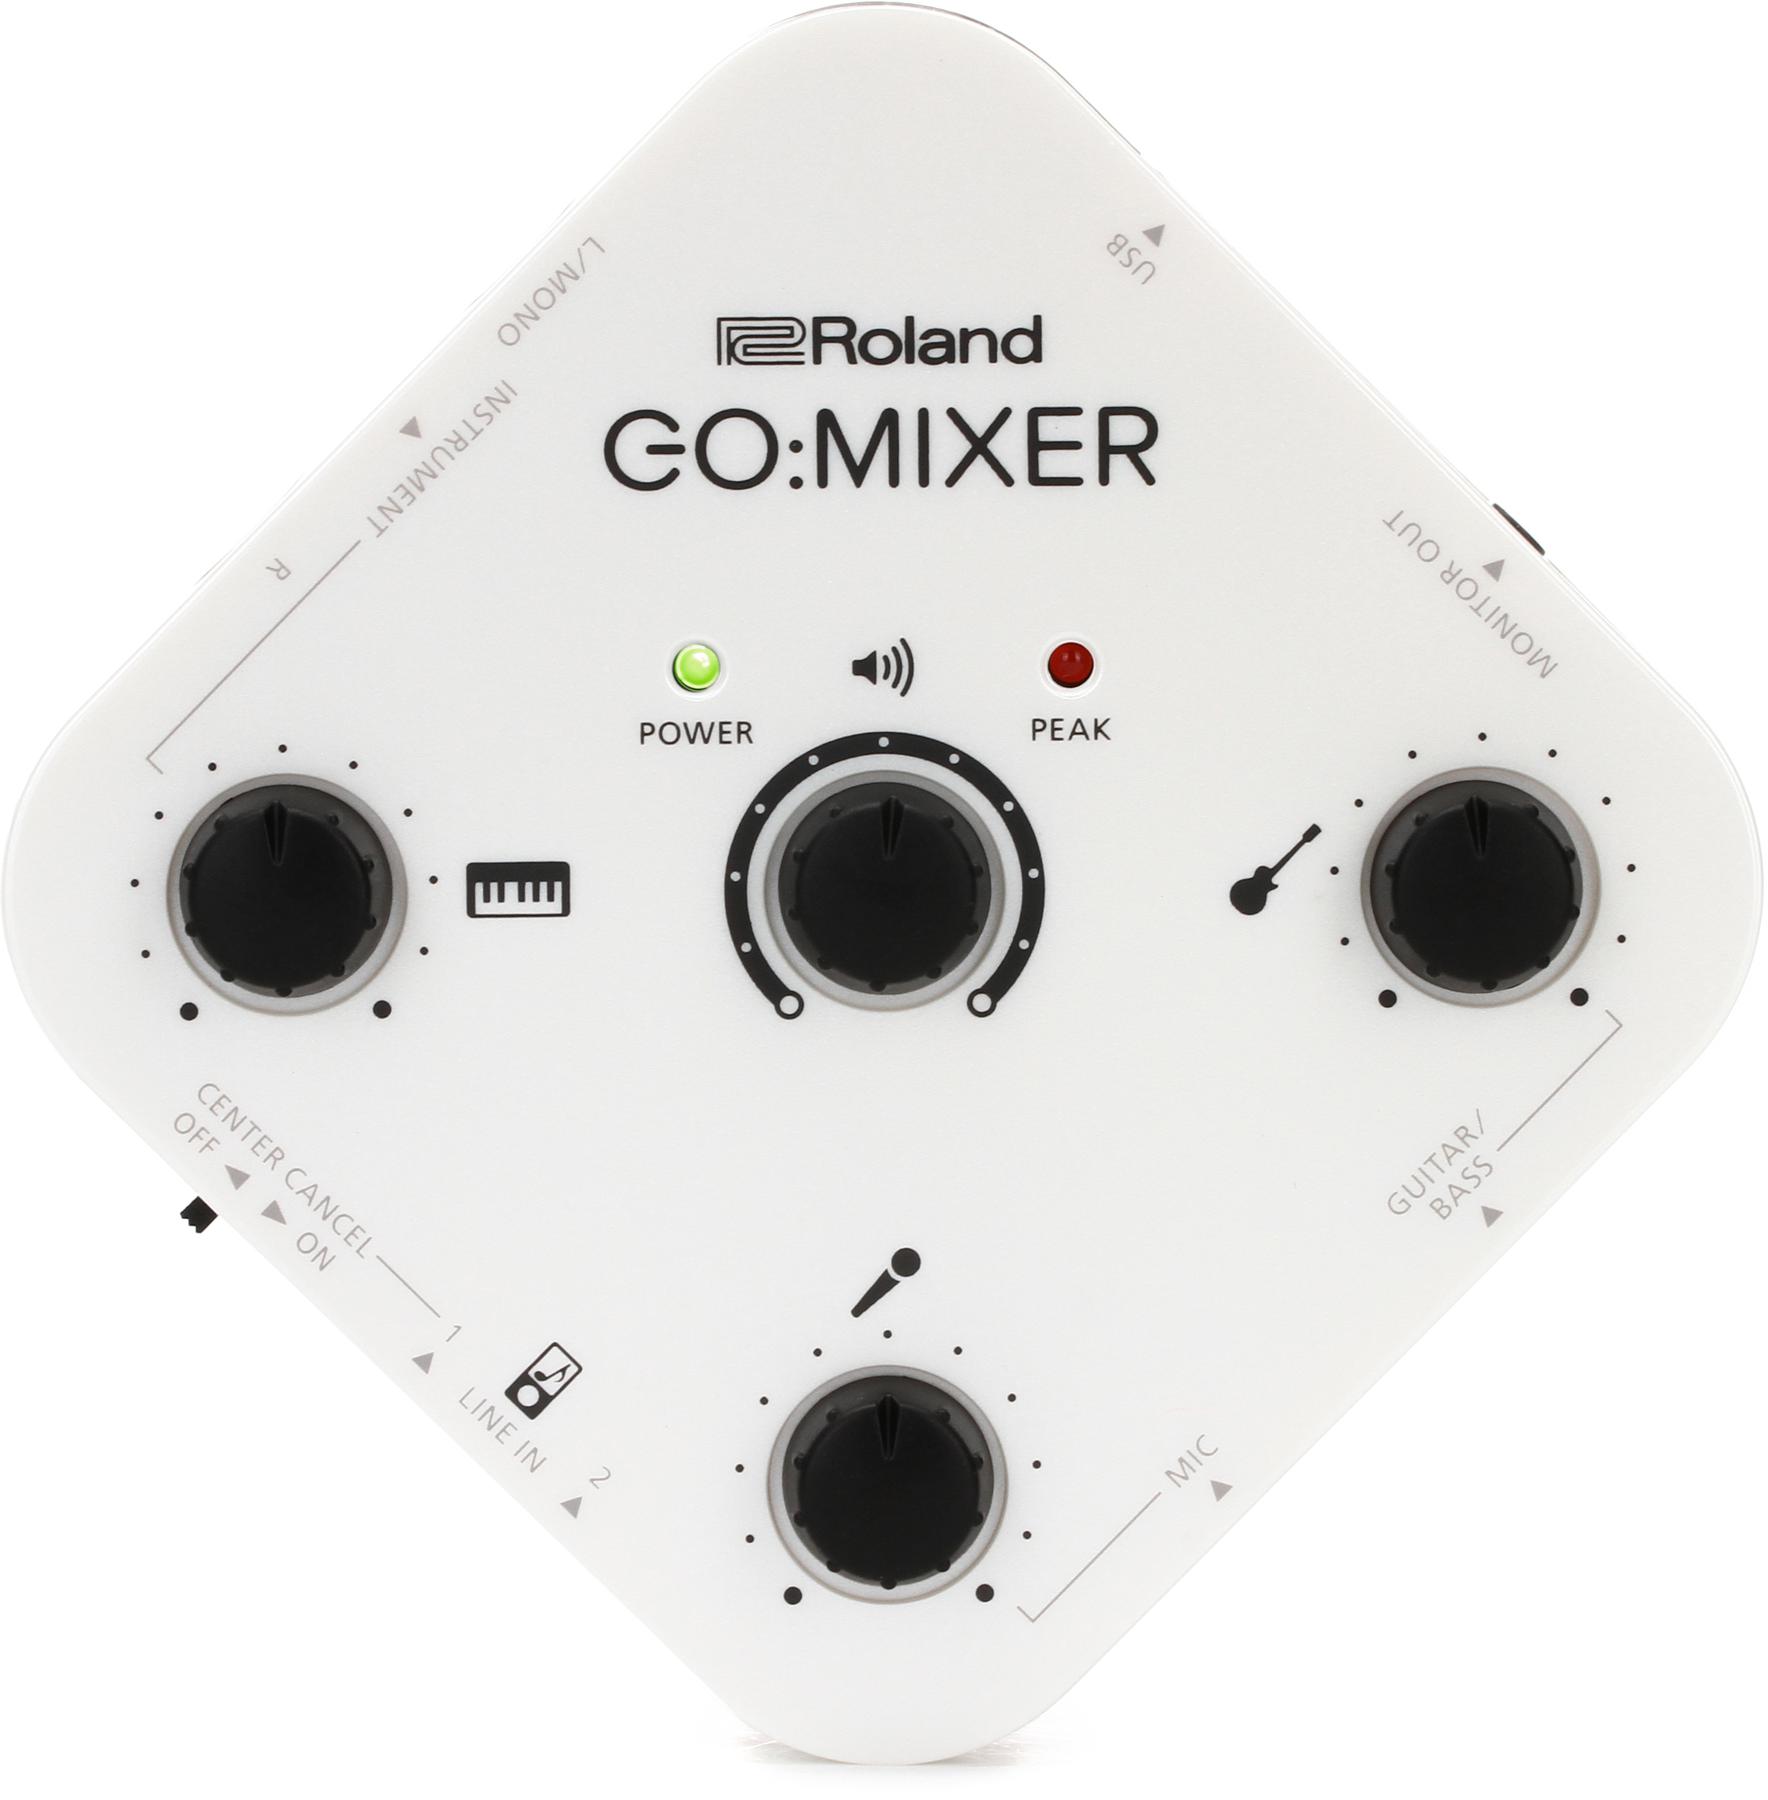 4. Roland GOMIXER Audio Mixer for Smartphones